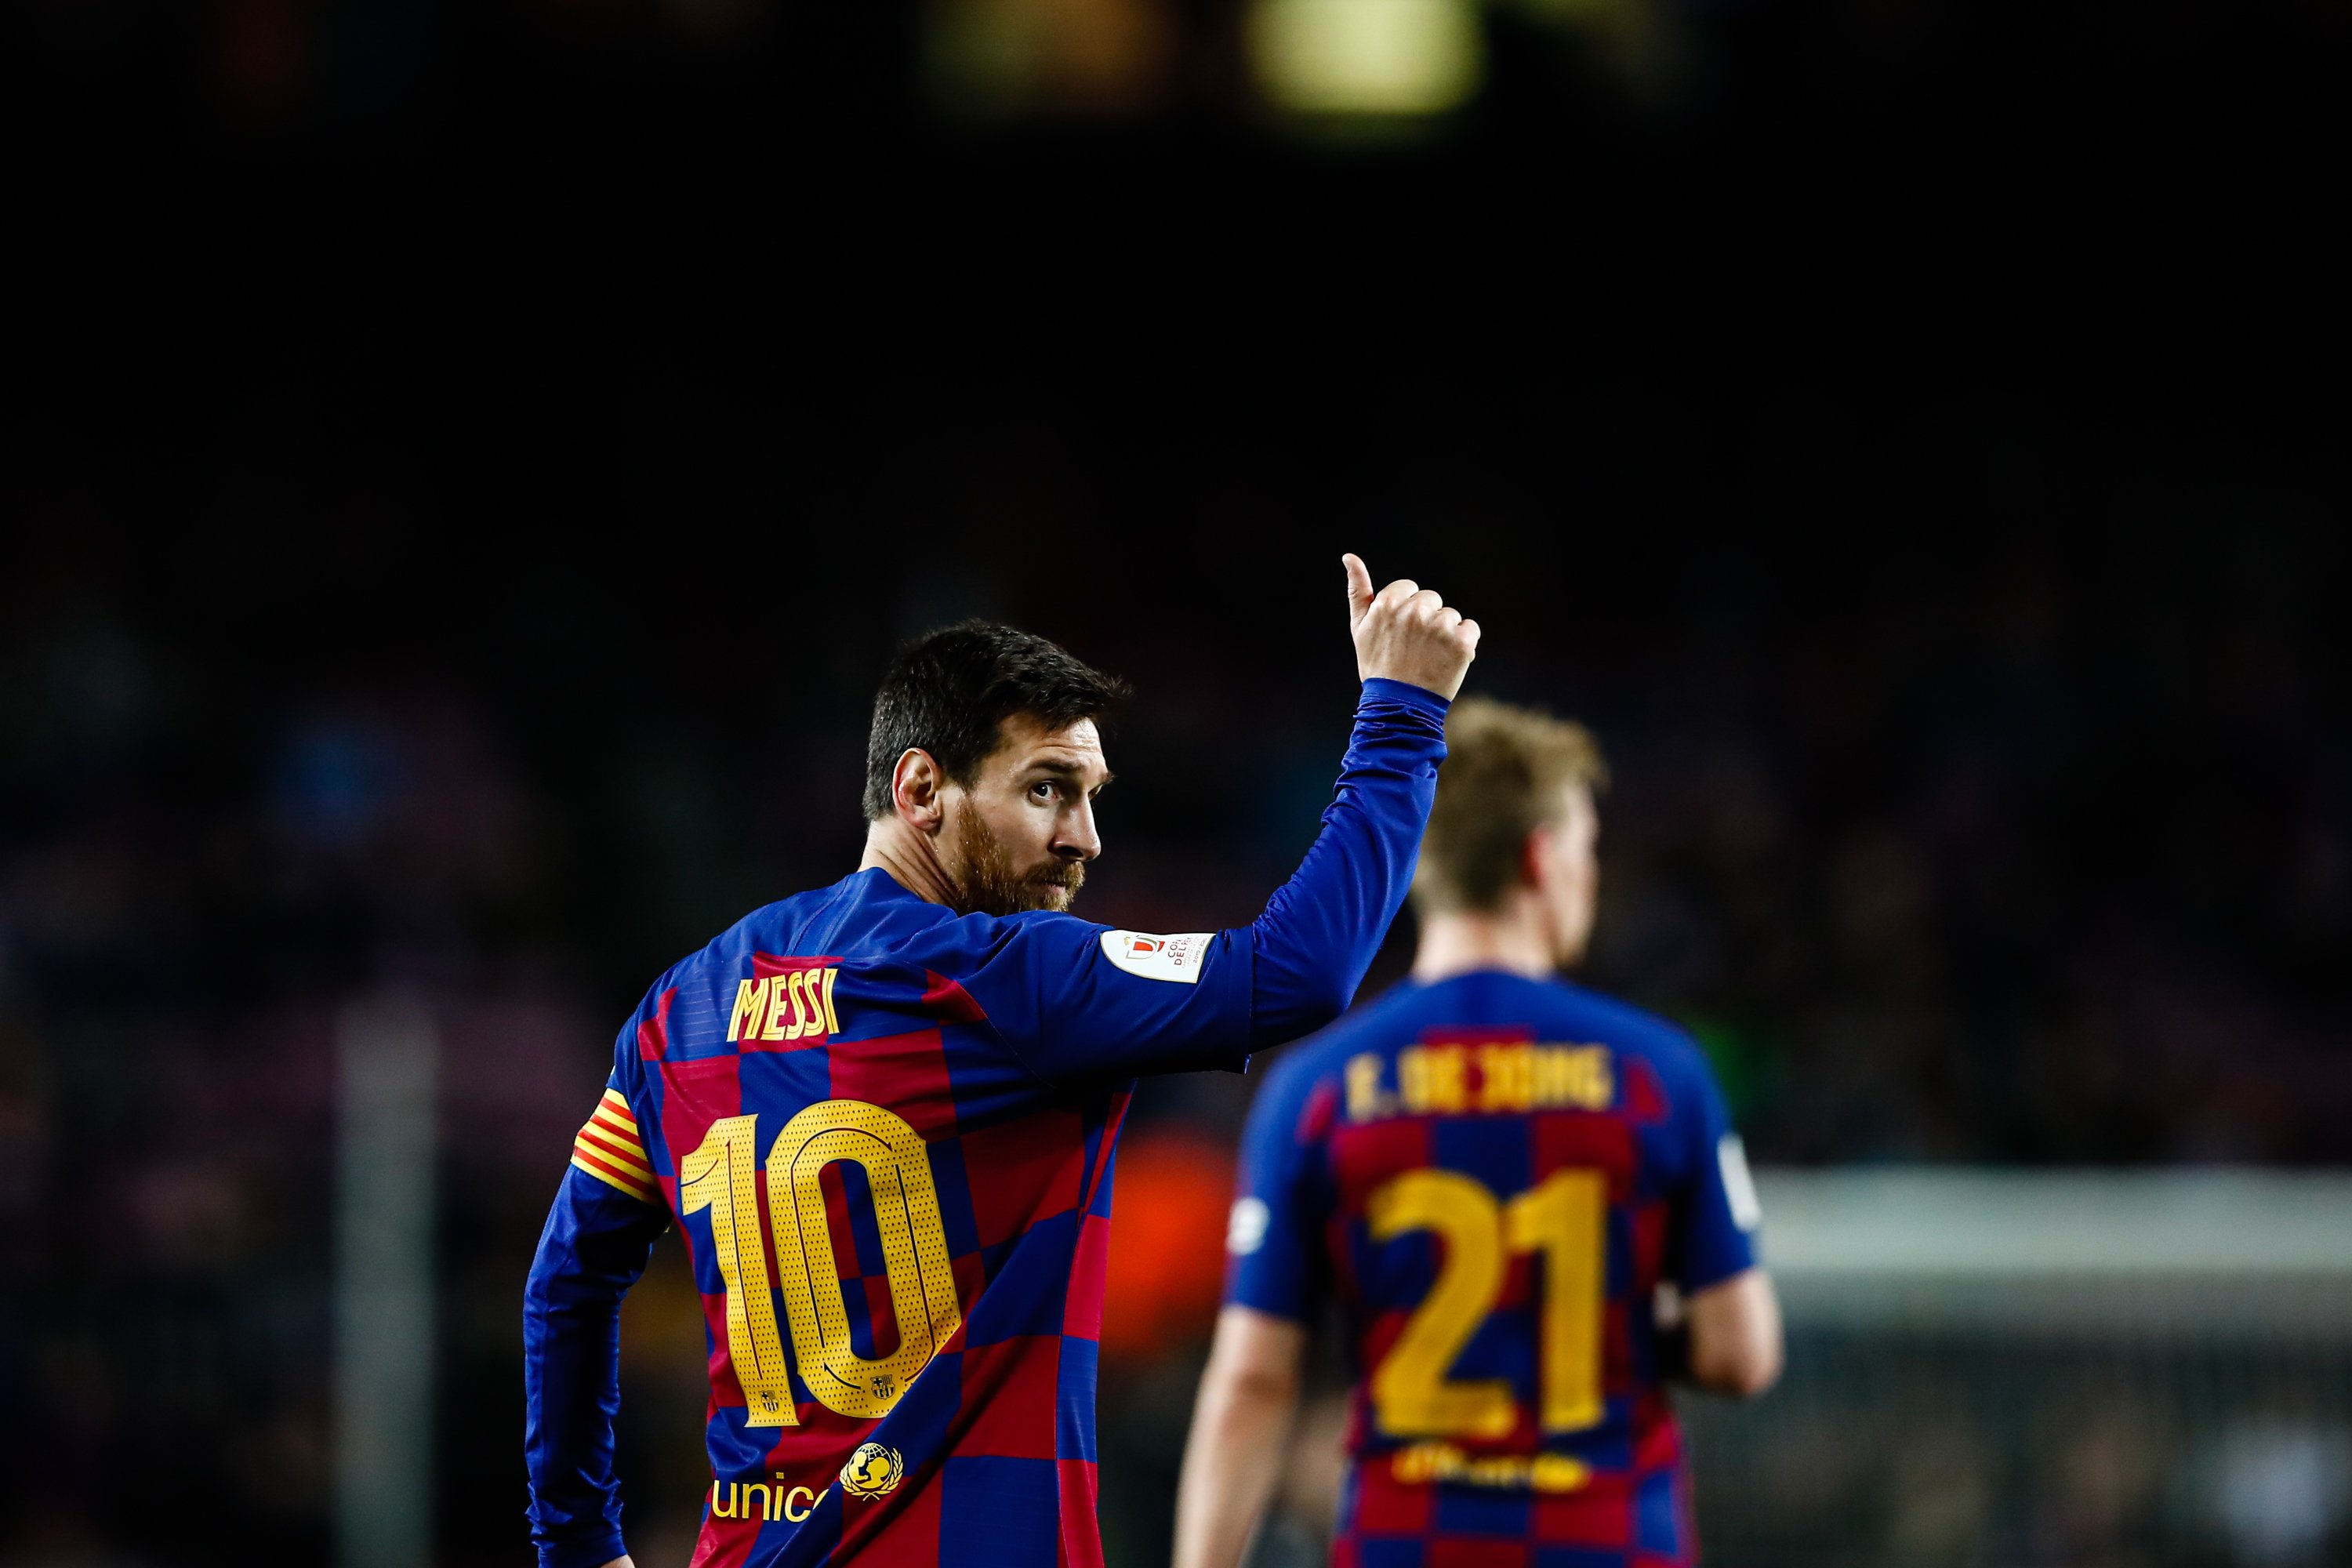 La cláusula de los 700 millones no sigue vigente: Messi podría marcharse libre